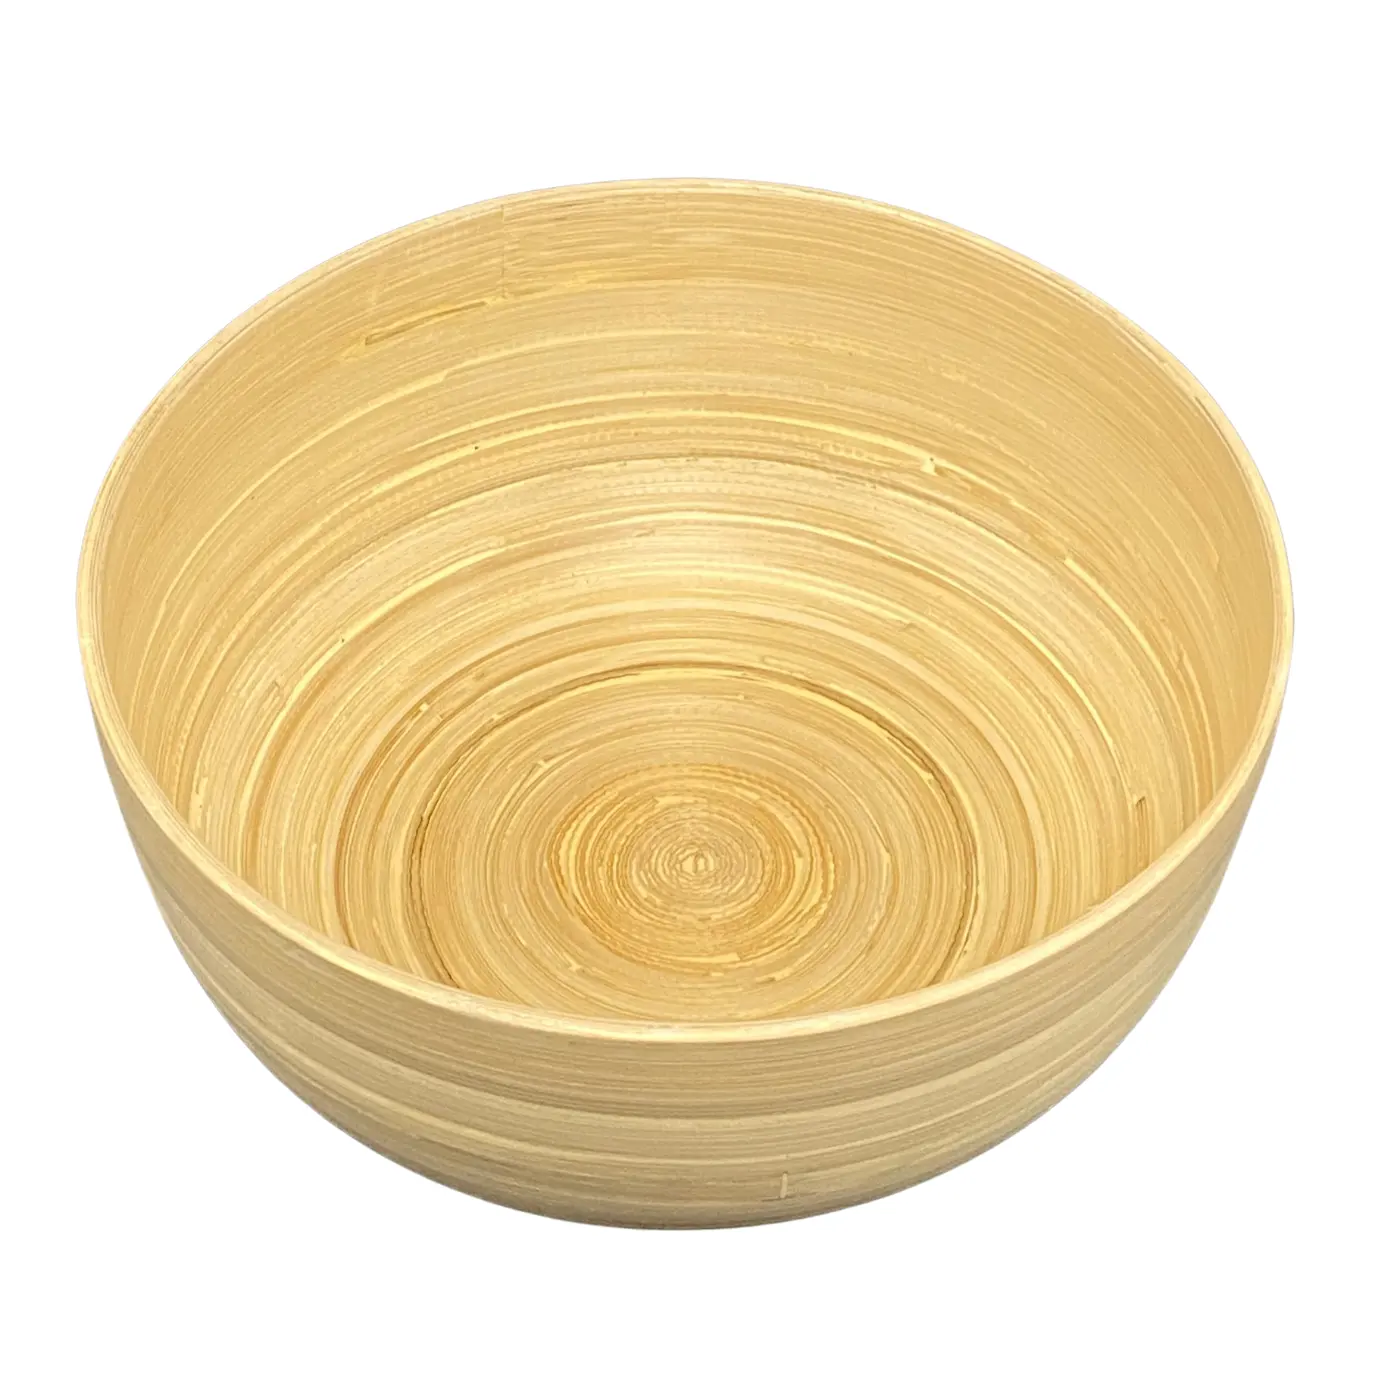 Tigelas de bambu para salada de madeira, tigela de madeira de bambu altamente durável para salada, massa de madeira doméstica, tigela de madeira amigável